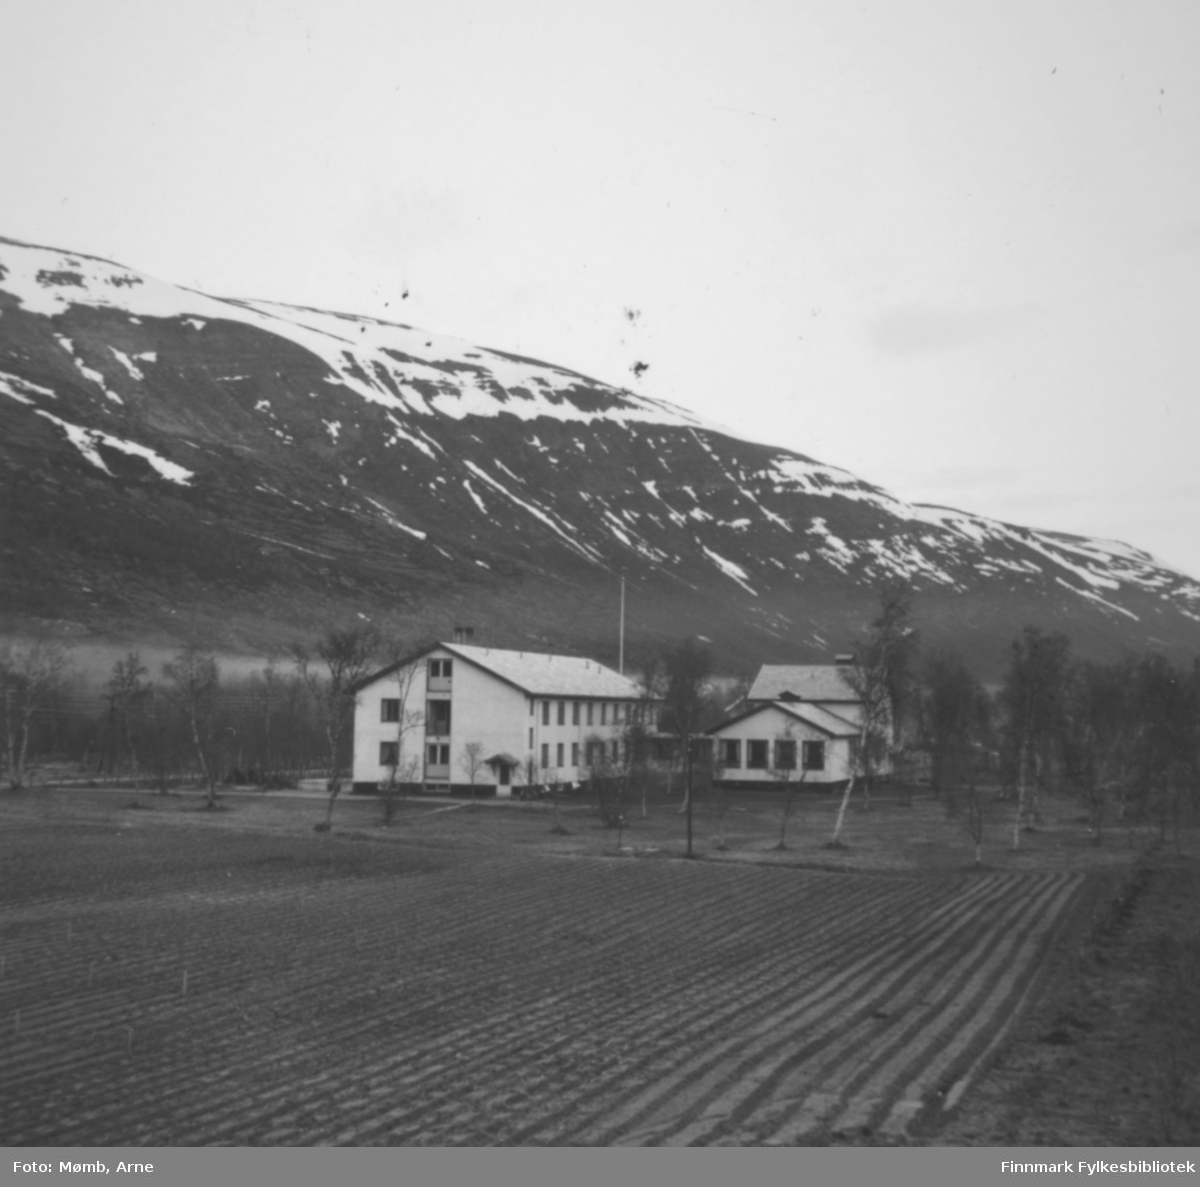 Finnmark landbruksskole i Bonakas i 1958.